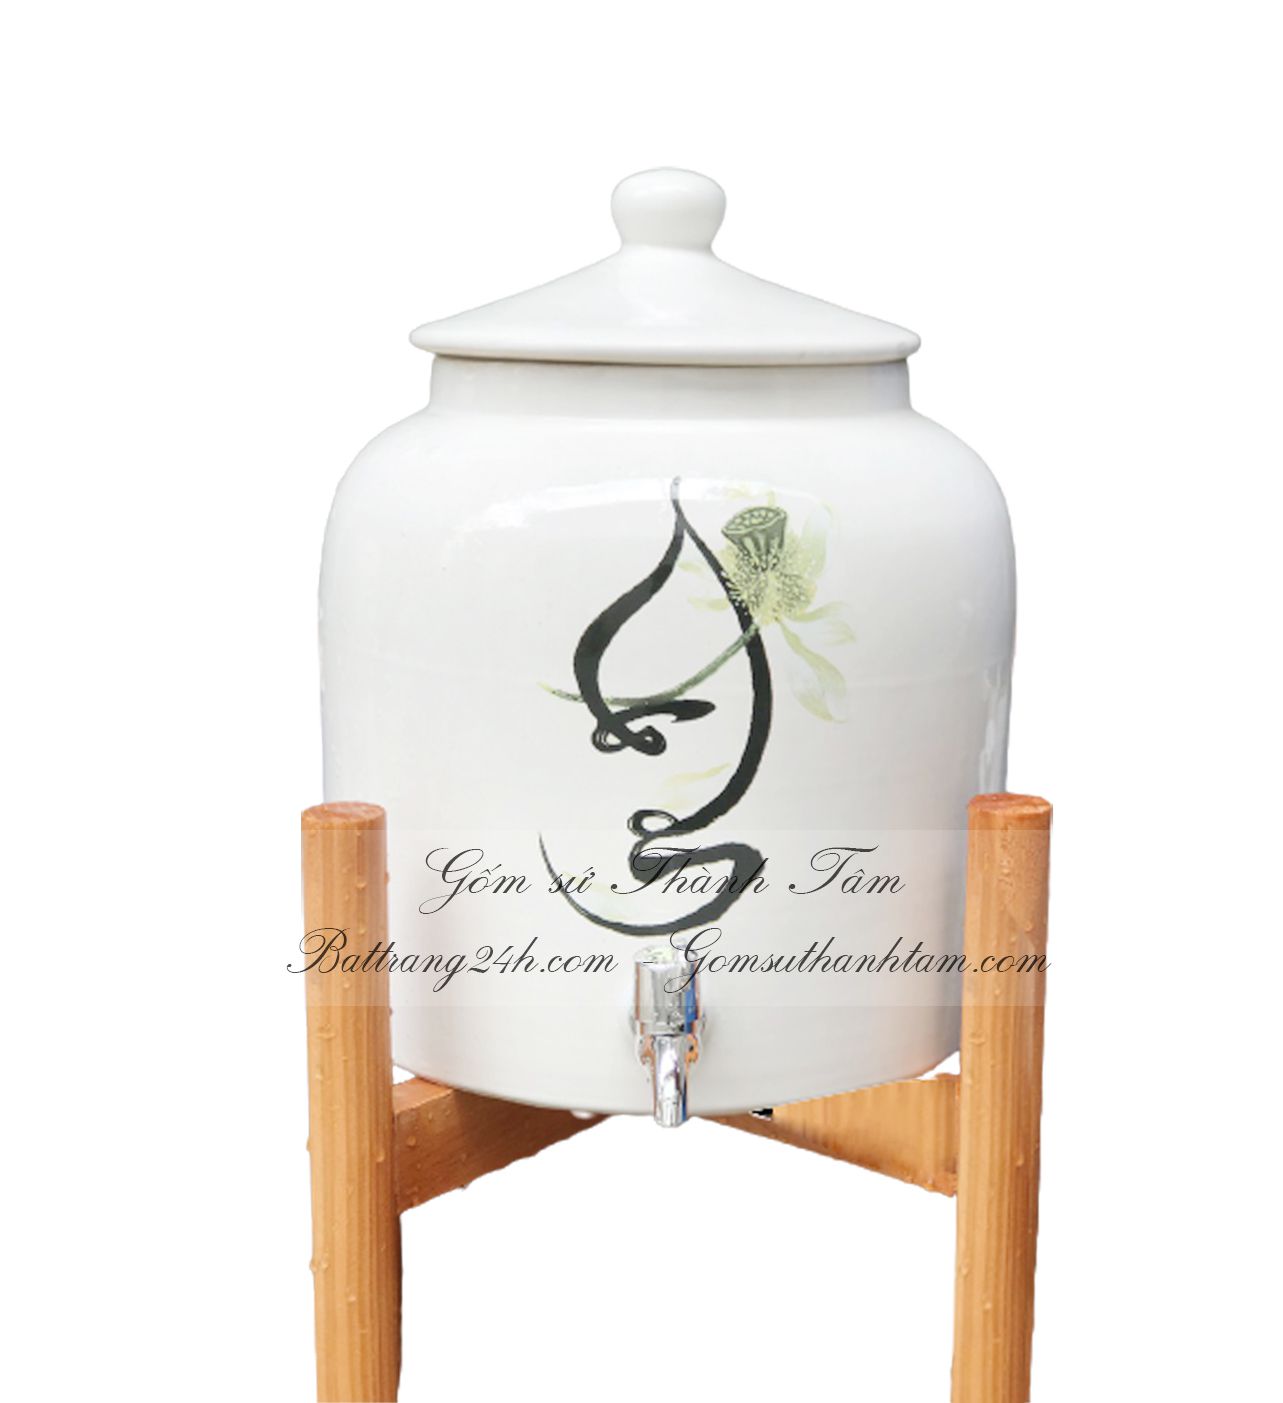 Xưởng sản xuất bình nước gốm sứ Bát Tràng cao cấp, chính hãng vẽ hoa văn đẹp mắt dùng trong nhà hàng, quán ăn sang trọng đẹp mắt